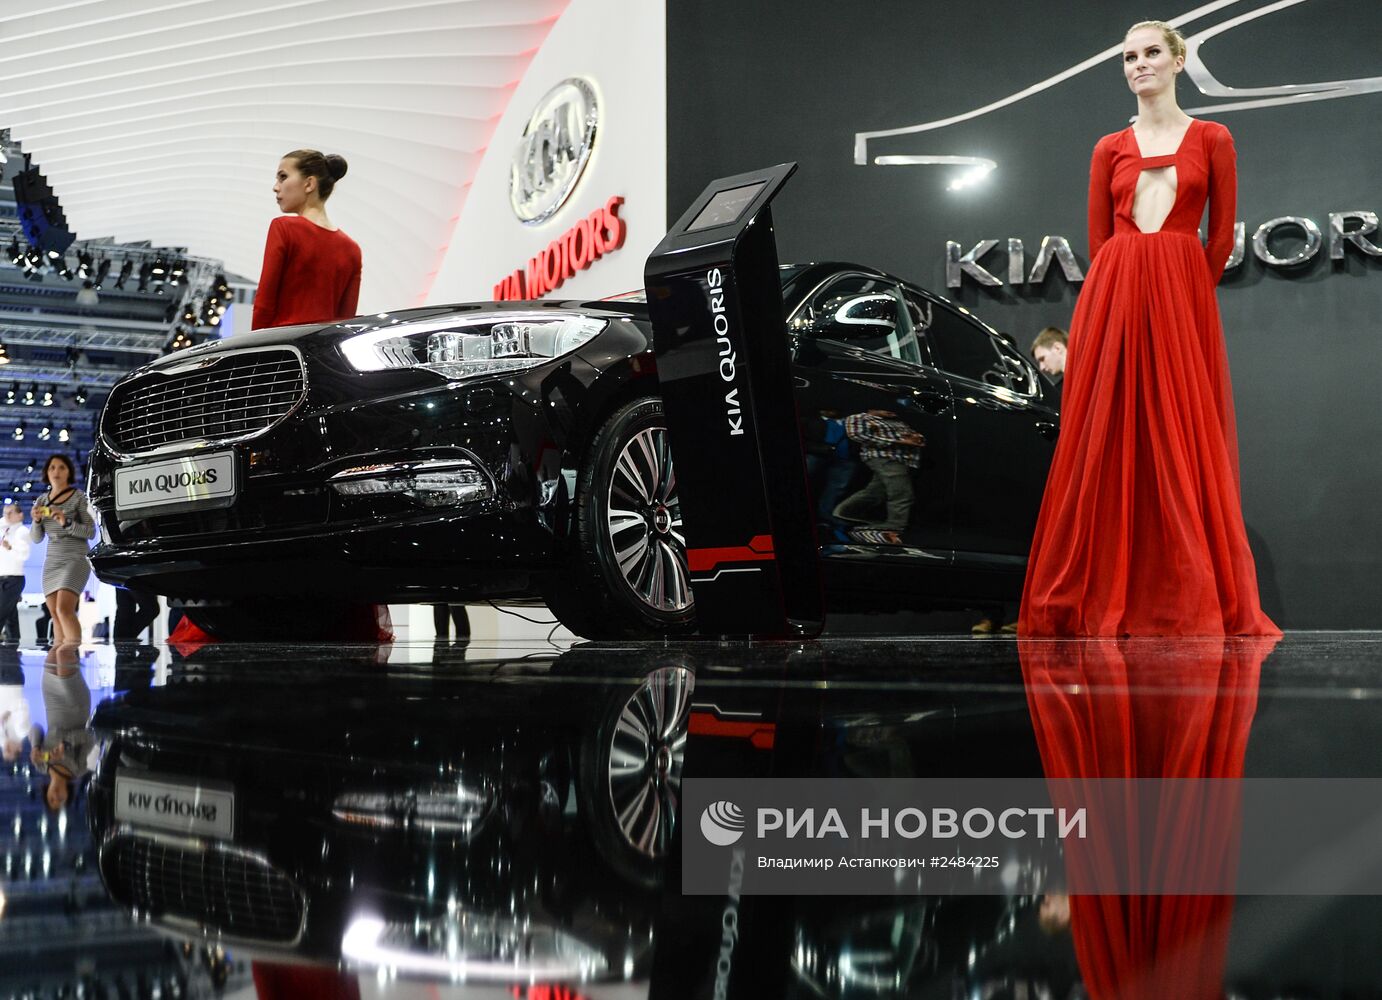 Московский международный автомобильный салон 2014 открылся для посетителей